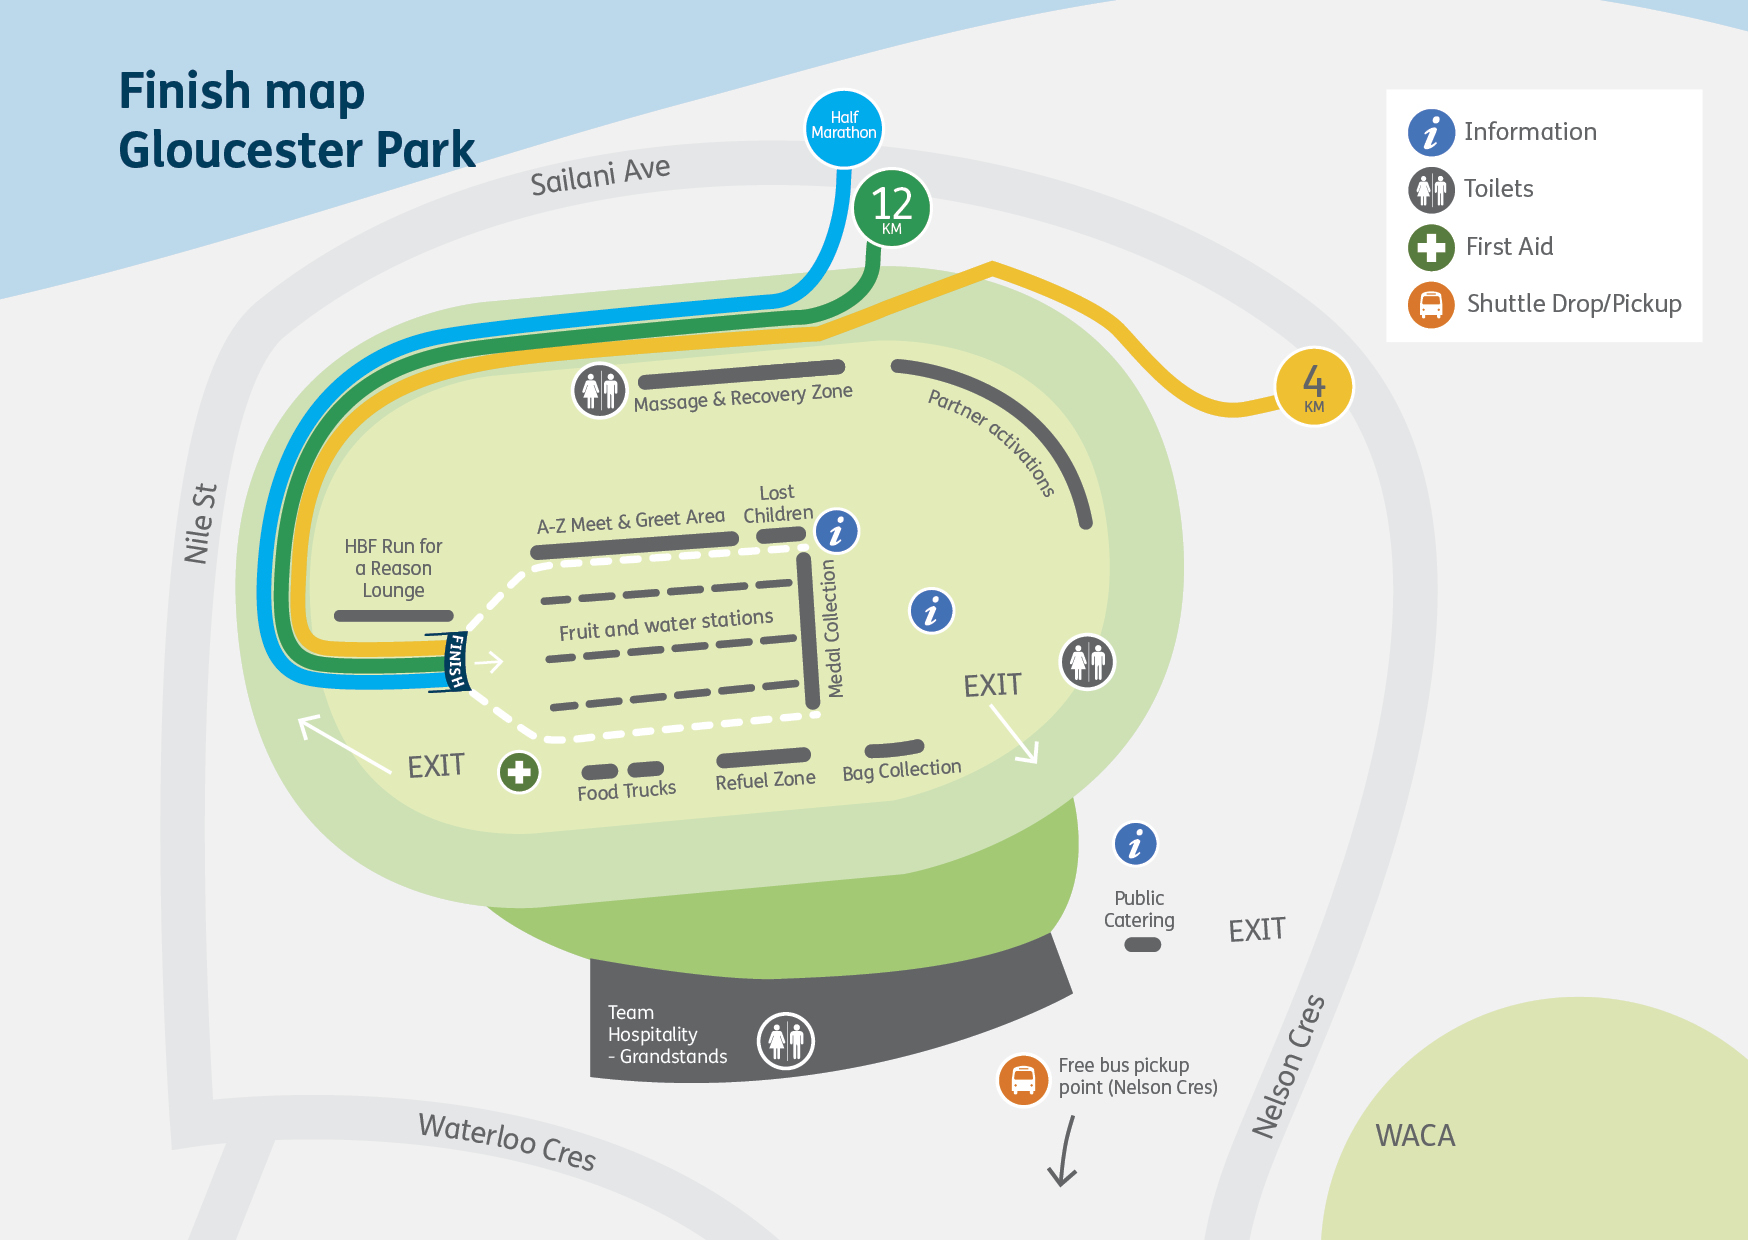 Map - HBF Run finish area